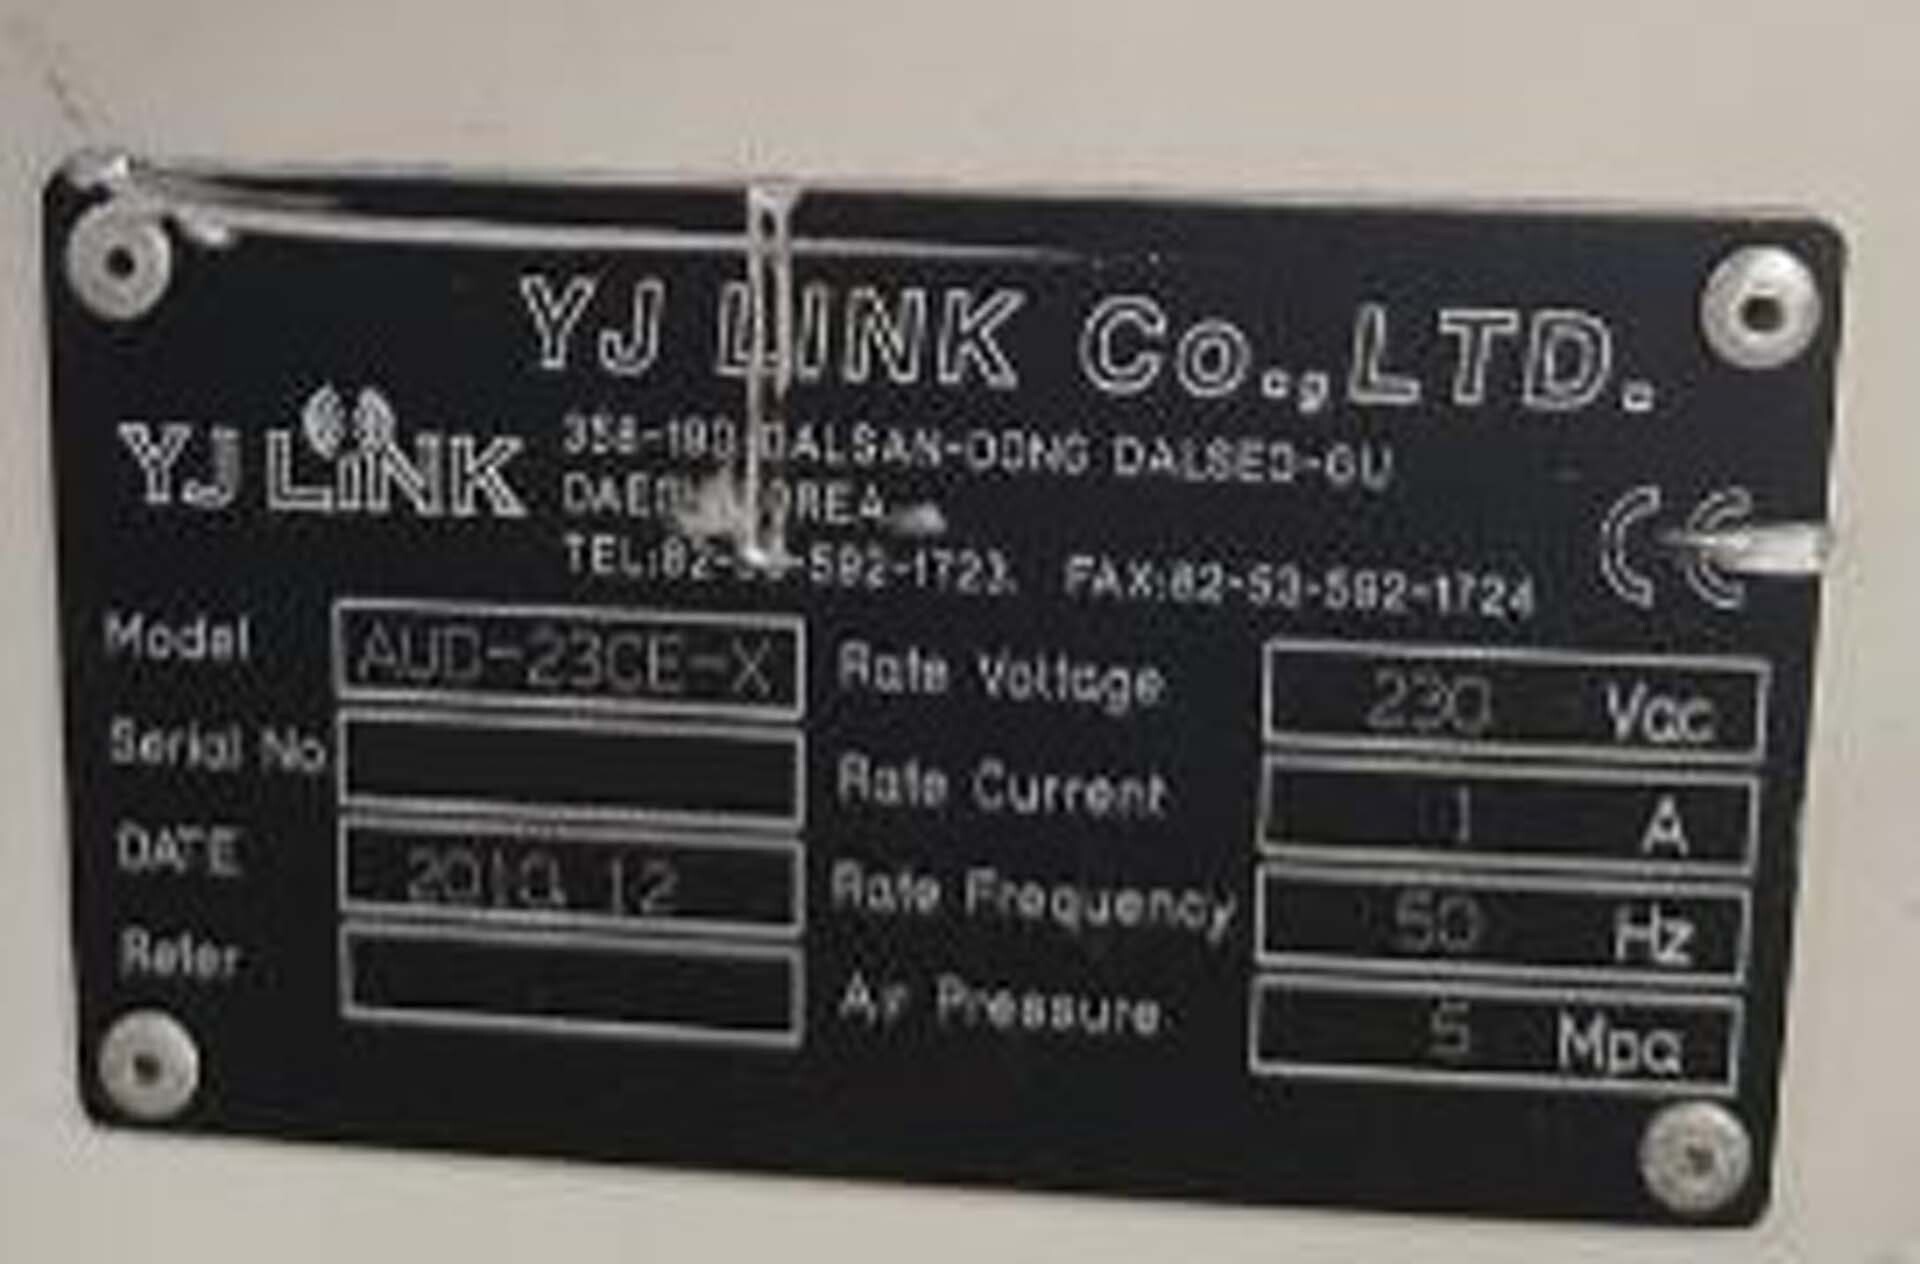 图为 已使用的 YJ LINK AUD-23CE-X 待售